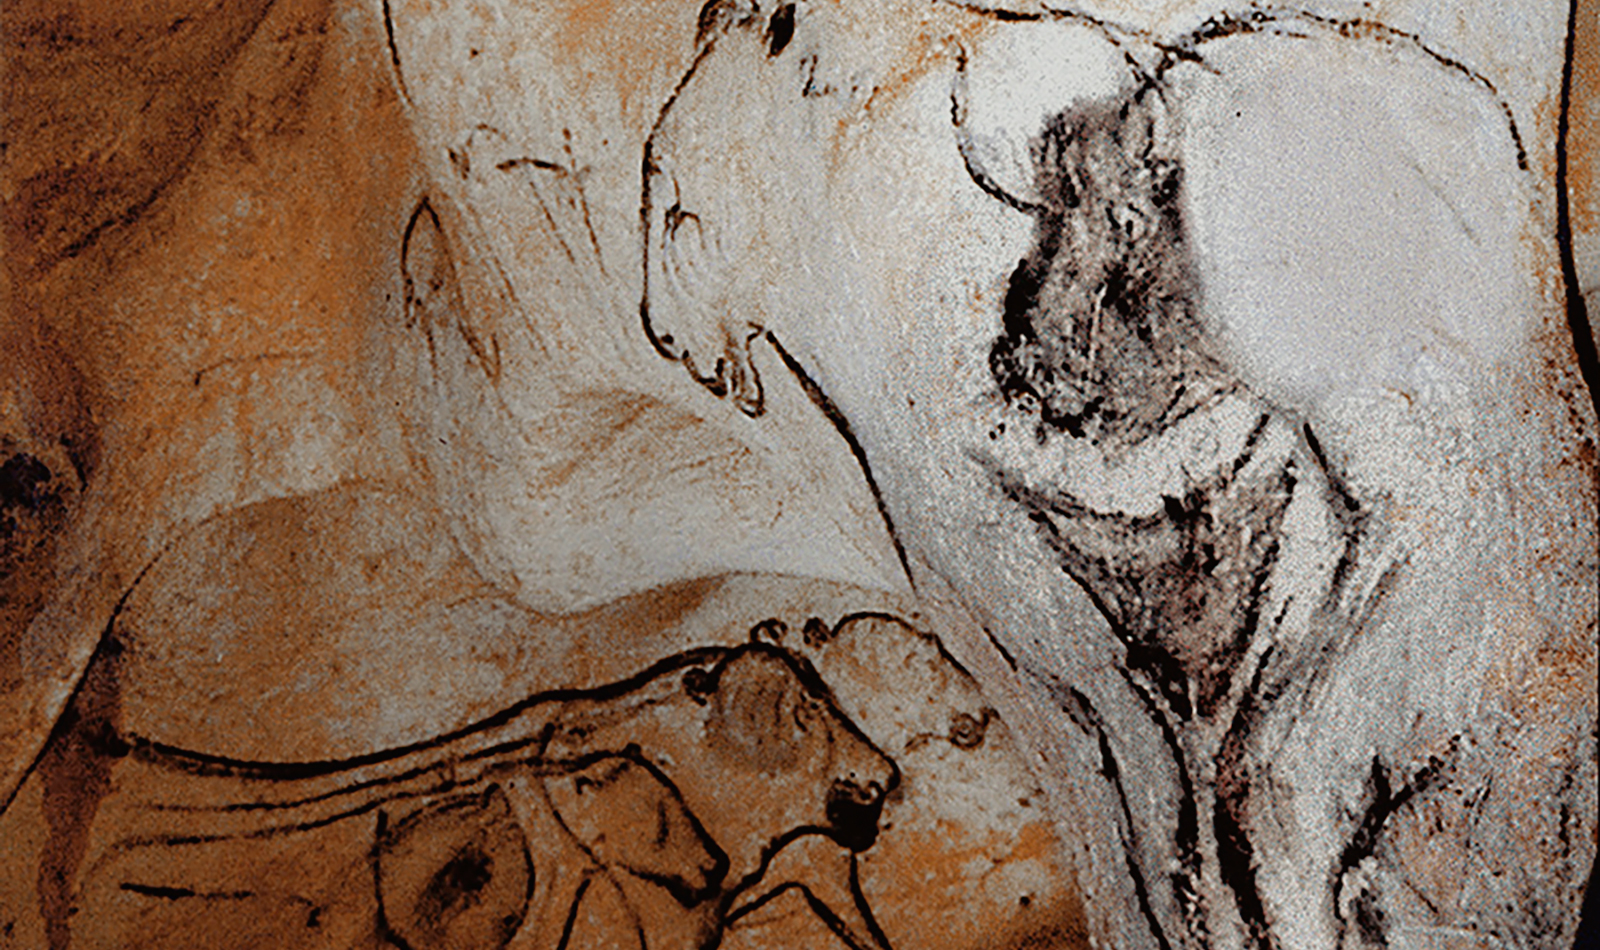 Venus Sorcerer Chauvet Cave Paintings Rock Art France Bradshaw Foundation